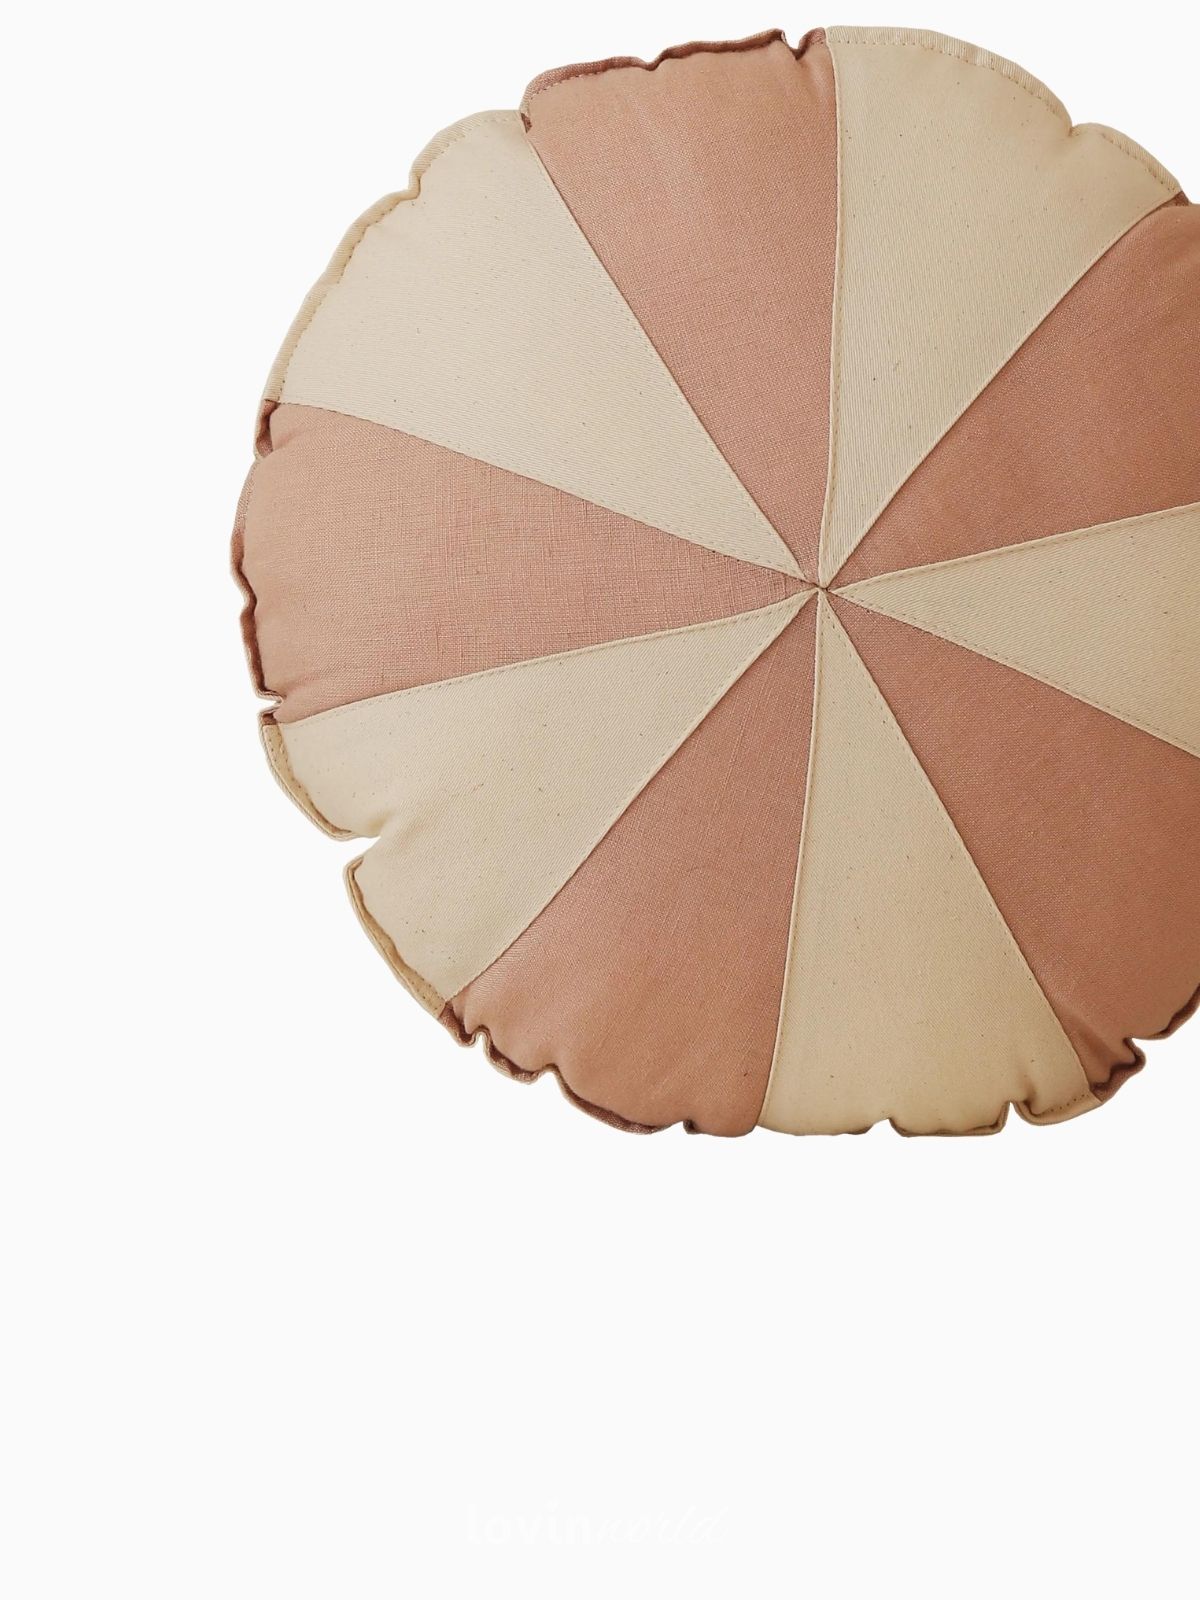 Cuscino Circo 100% lino e cotone in colore rosa e beige 39x39 cm.-5